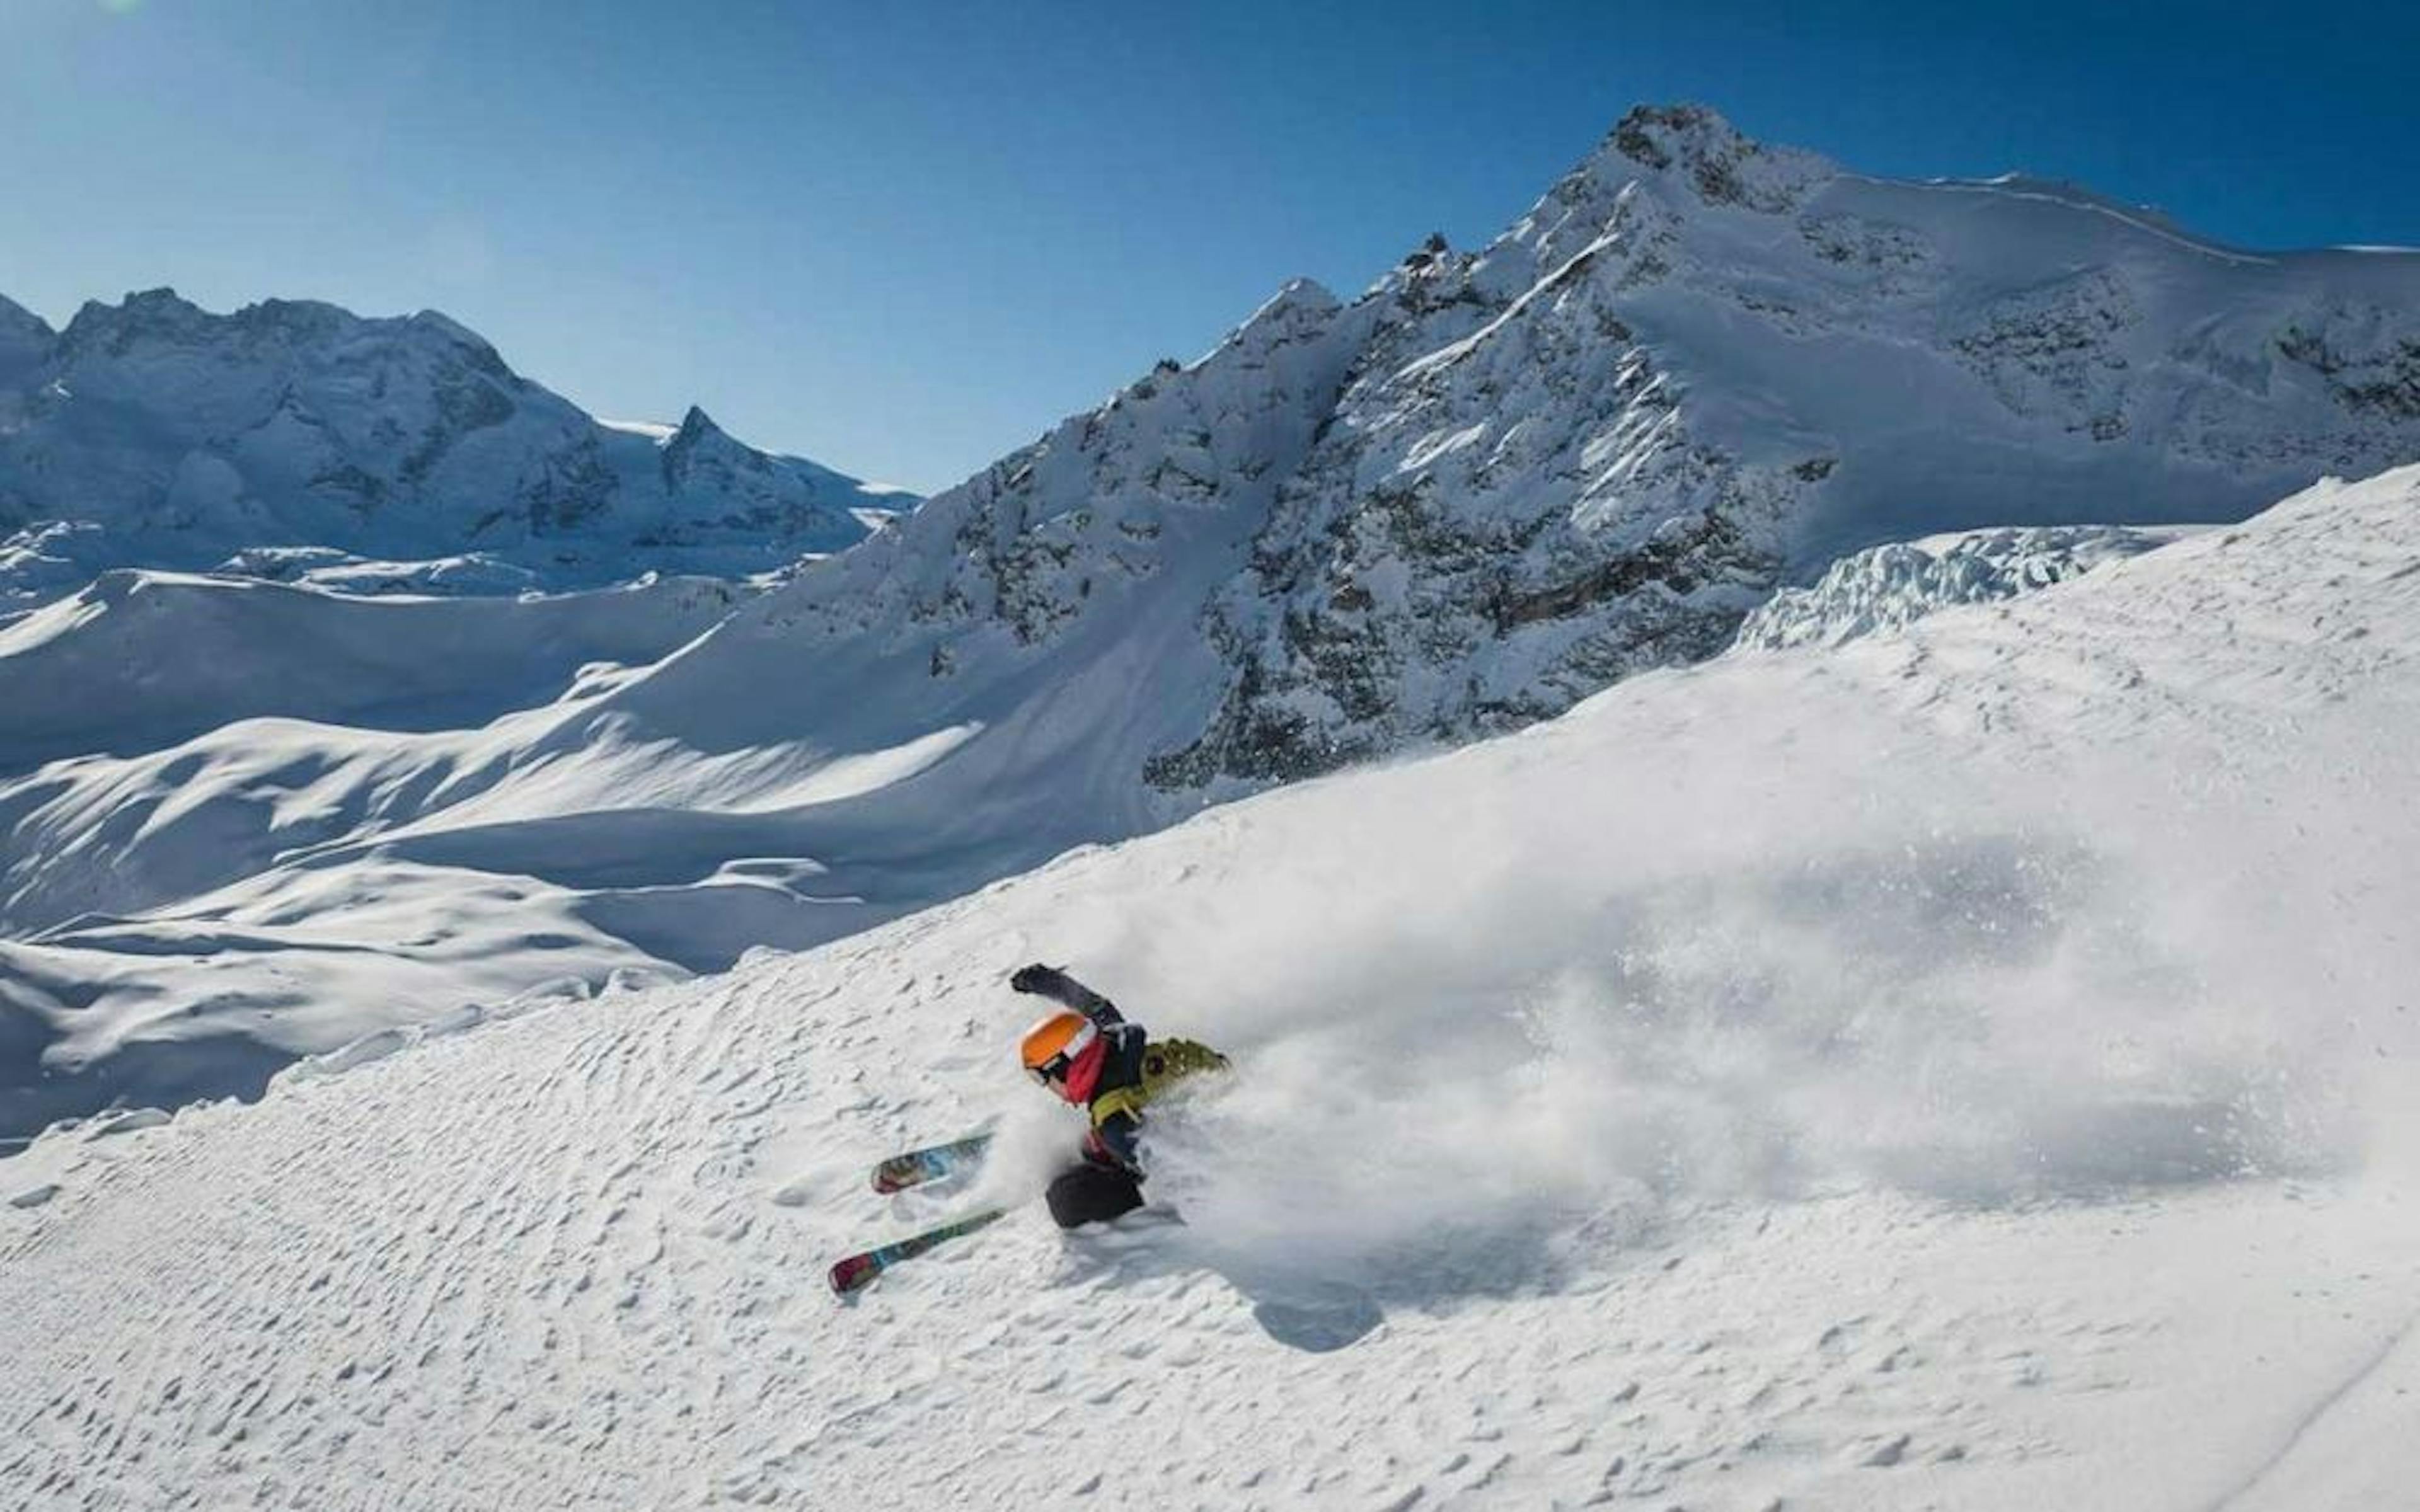 Heliski skier deep snow